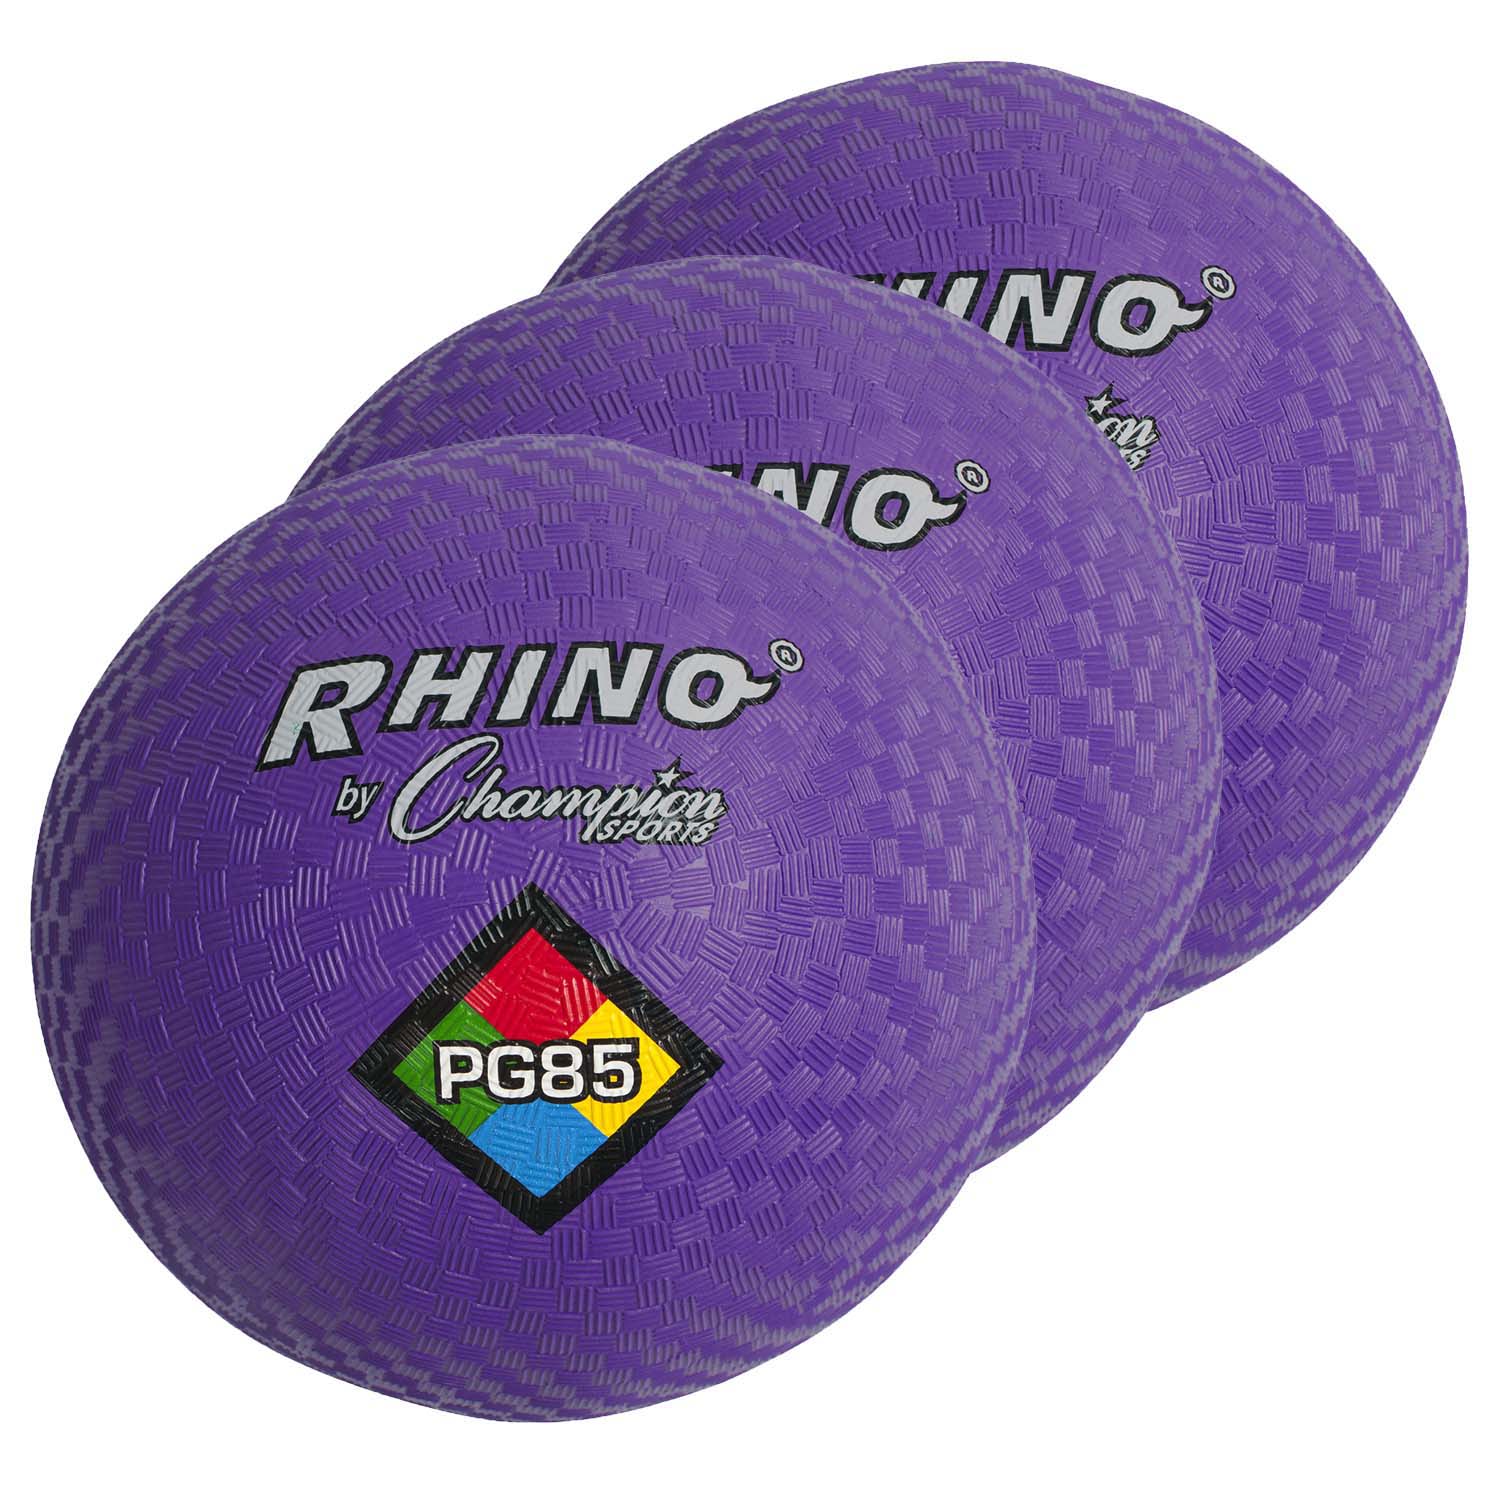 Playground Ball, 8-1/2", Purple, Pack of 3